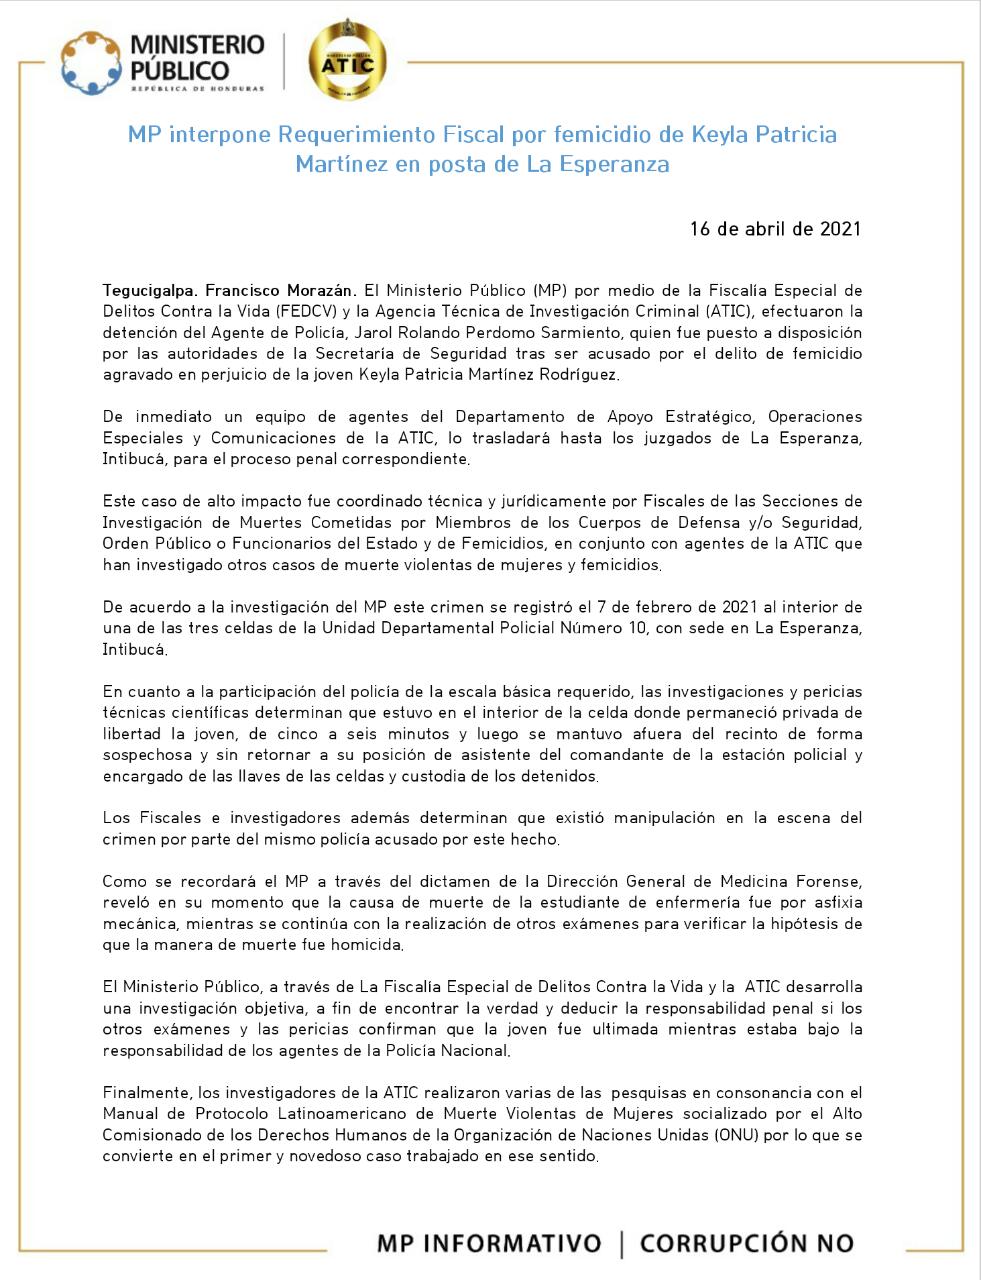 MP interpone Requerimiento Fiscal por femicidio de Keyla Patricia Martínez en posta de La Esperanza